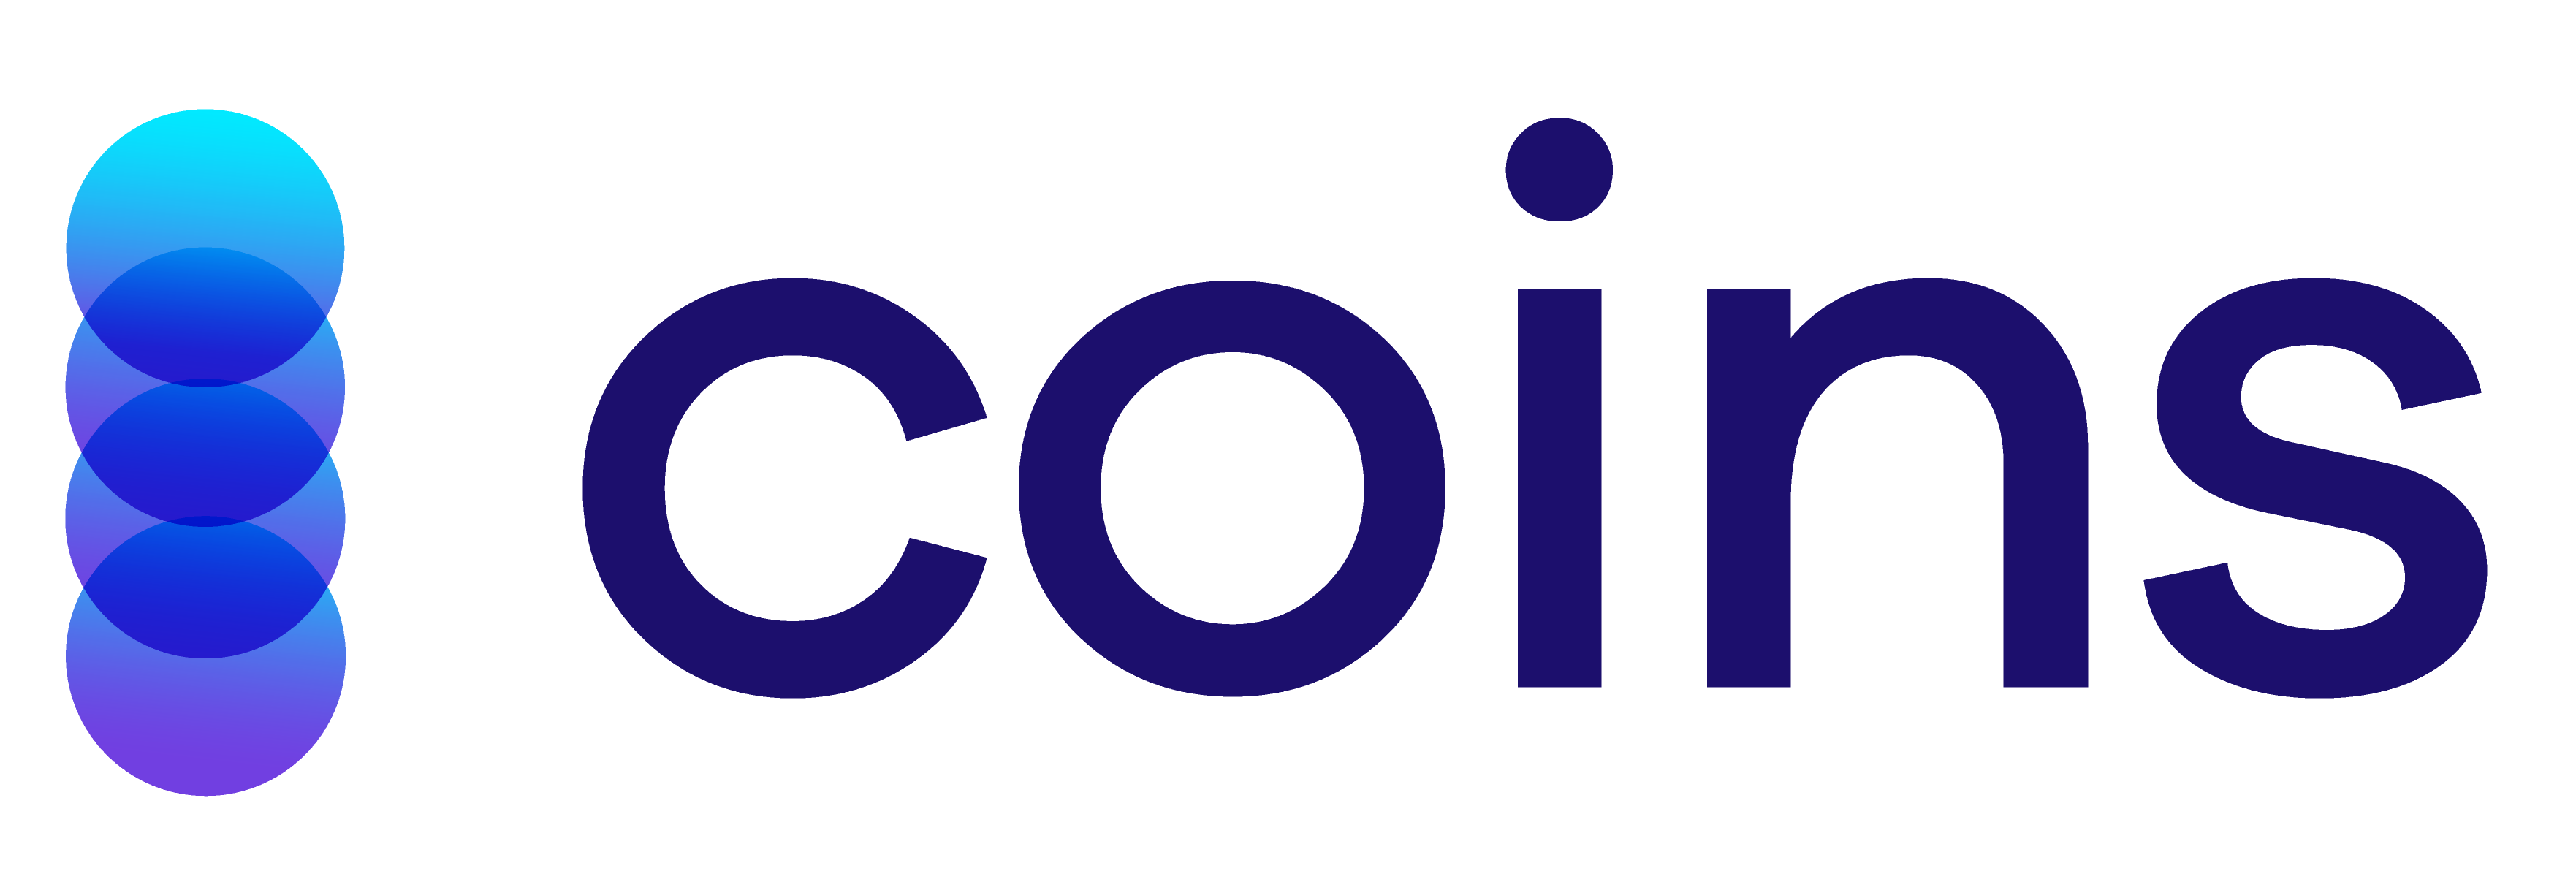 coins_logo